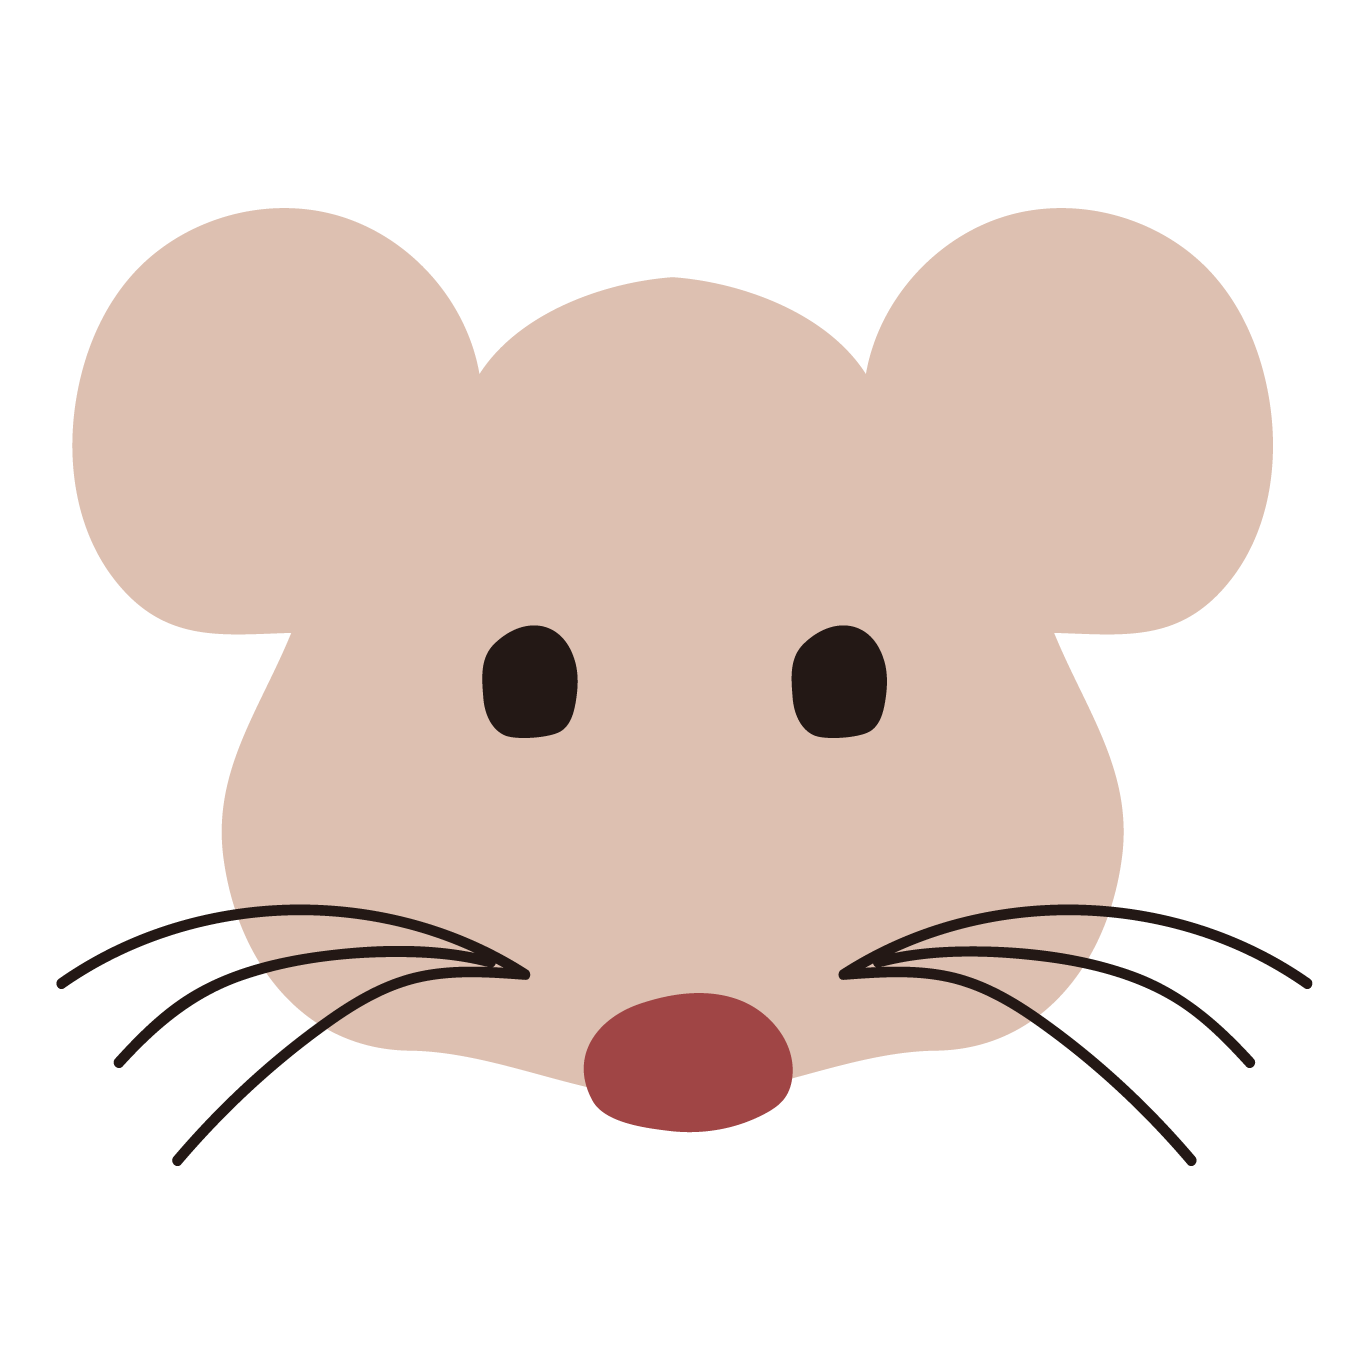 ネズミ イラスト ネズミのイラストの簡単な書き方 初心者でも描けるコツは